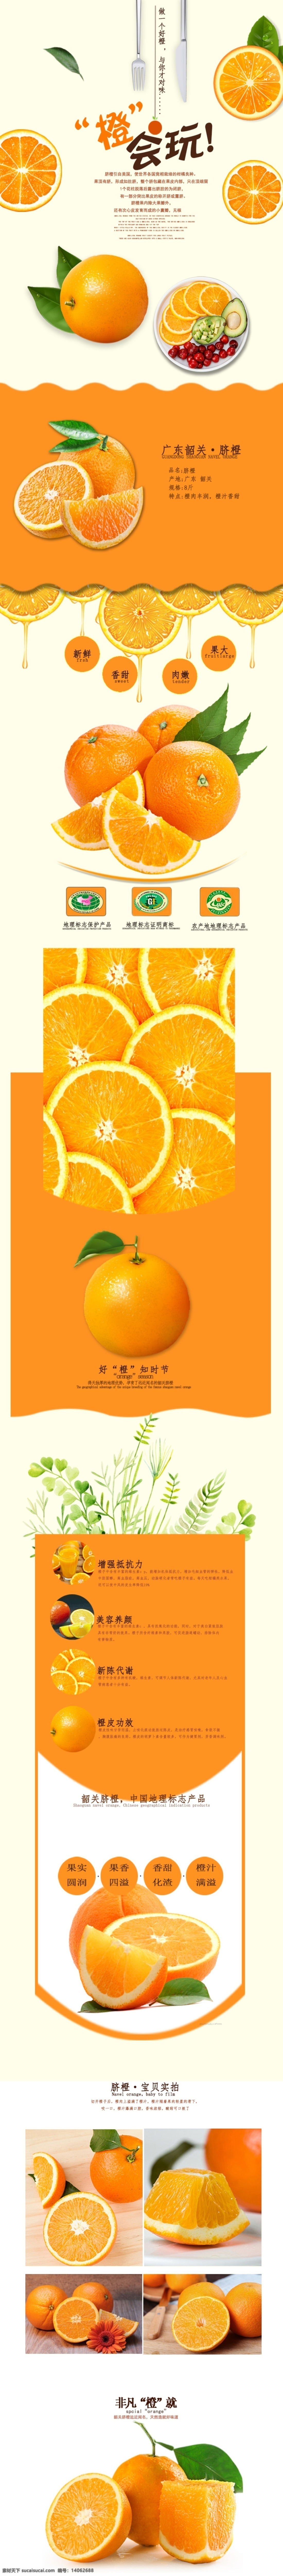 电商 淘宝 橙子 详情 页 模版 电商淘宝 生鲜 水果 橙色 橙子详情